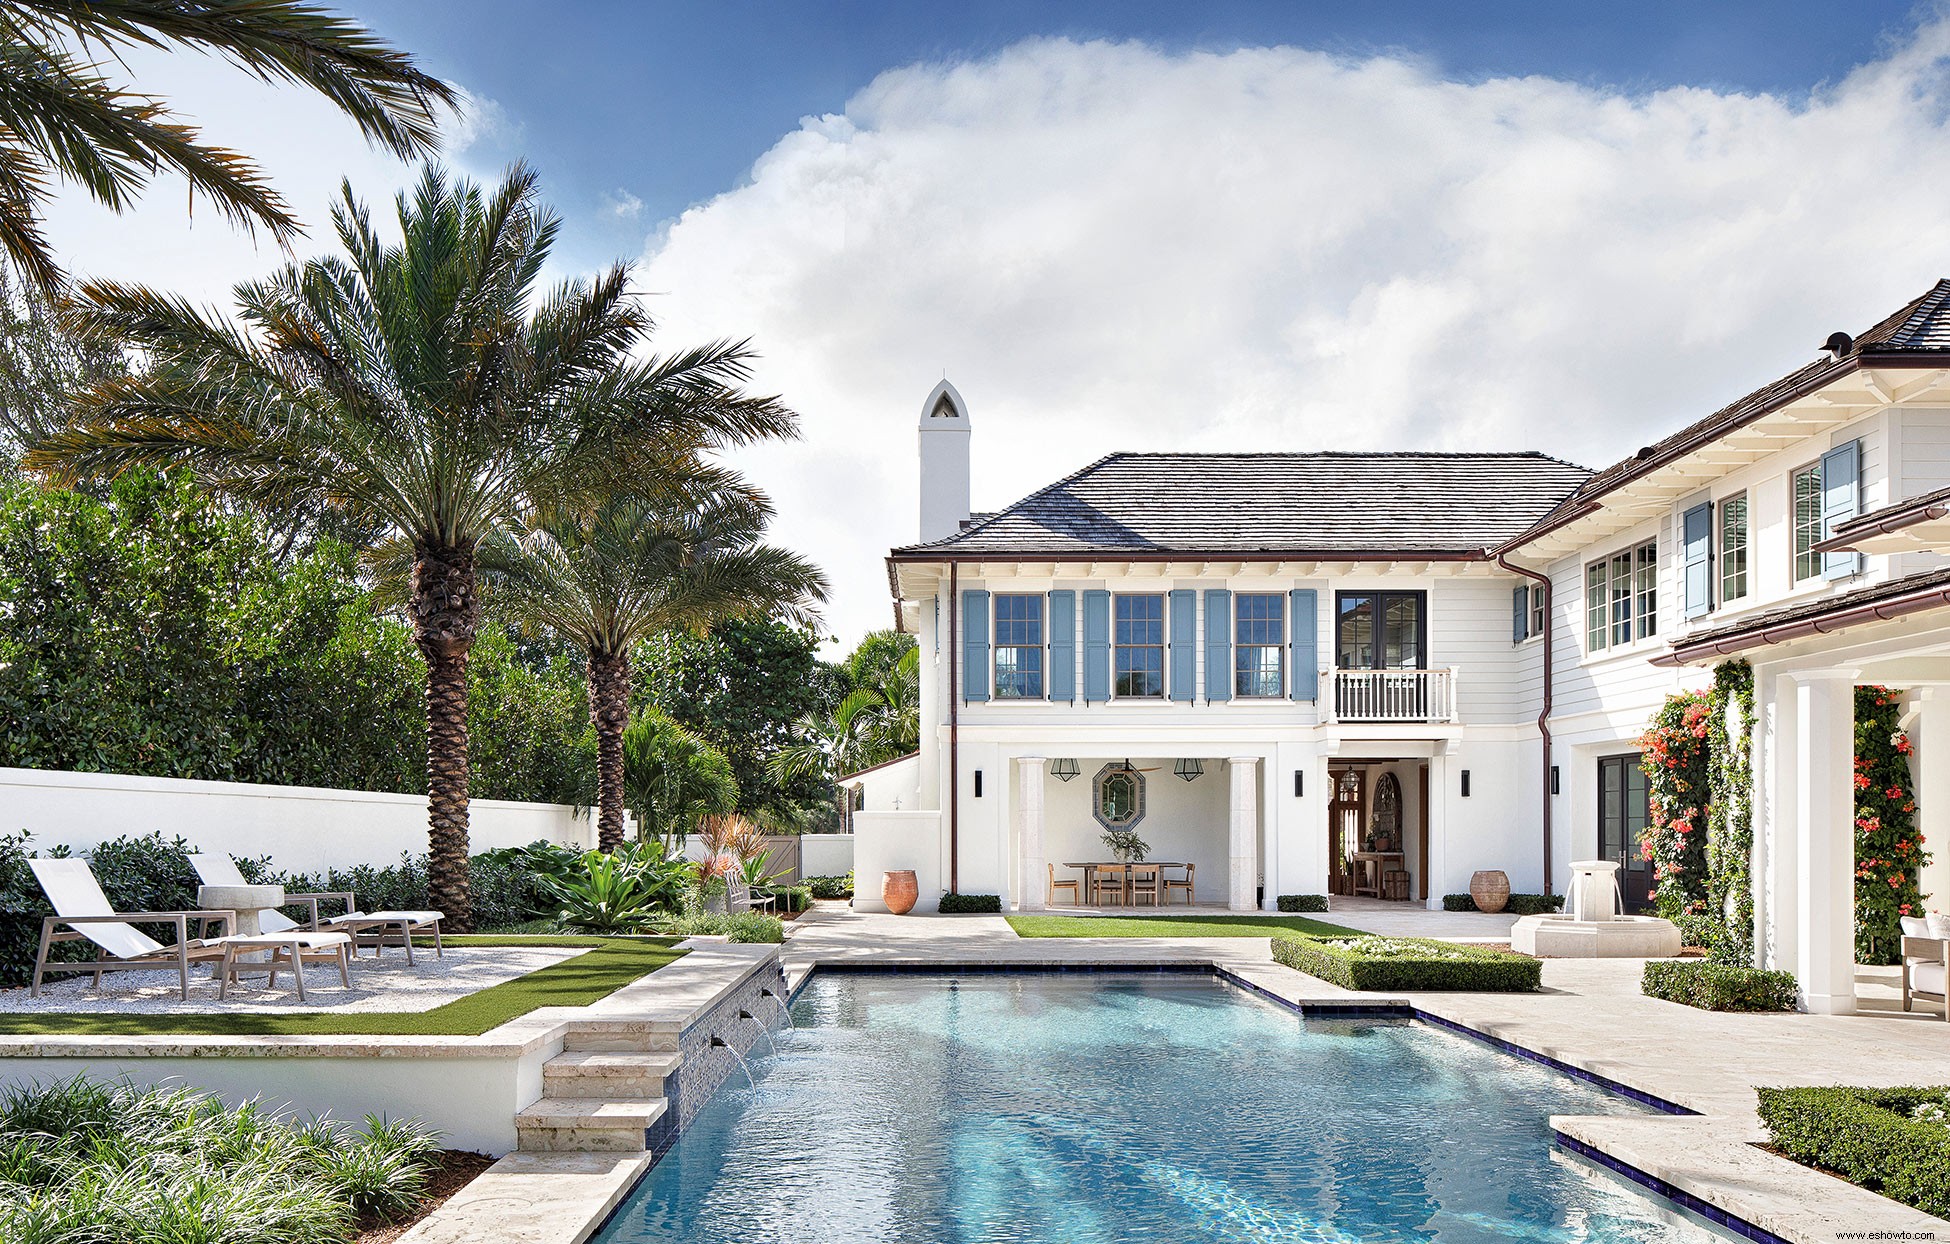 Influencias globales enriquecen esta casa de Florida con estilo tropical 